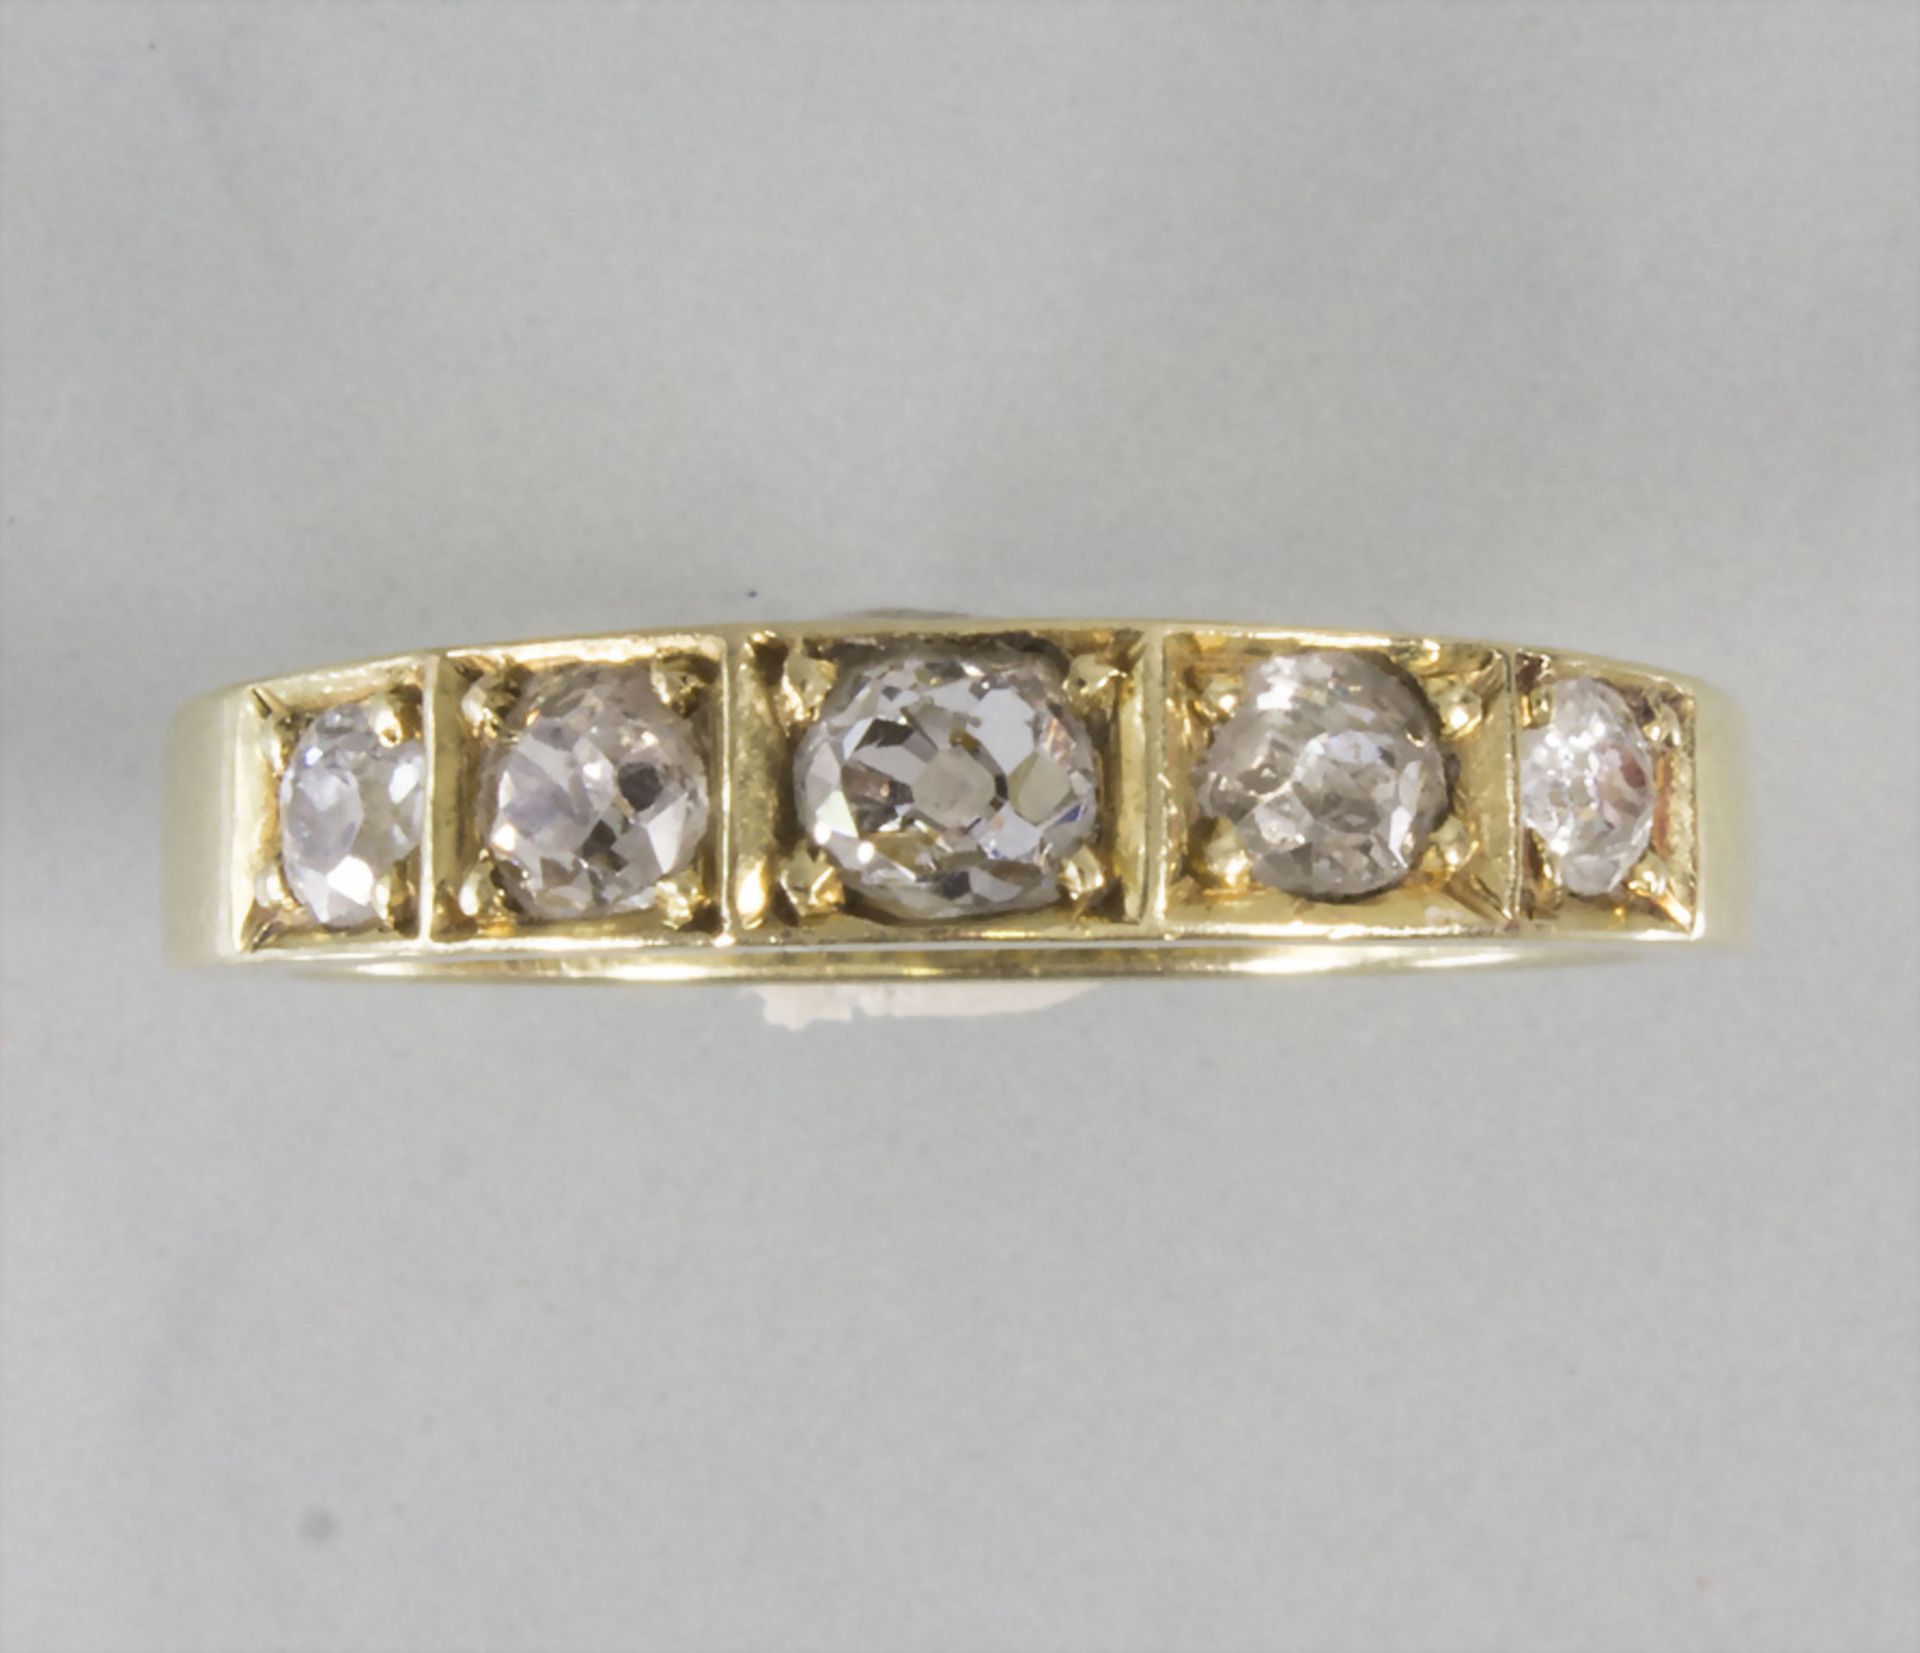 Damenring mit Diamanten / A 18k ladies gold ring with diamonds